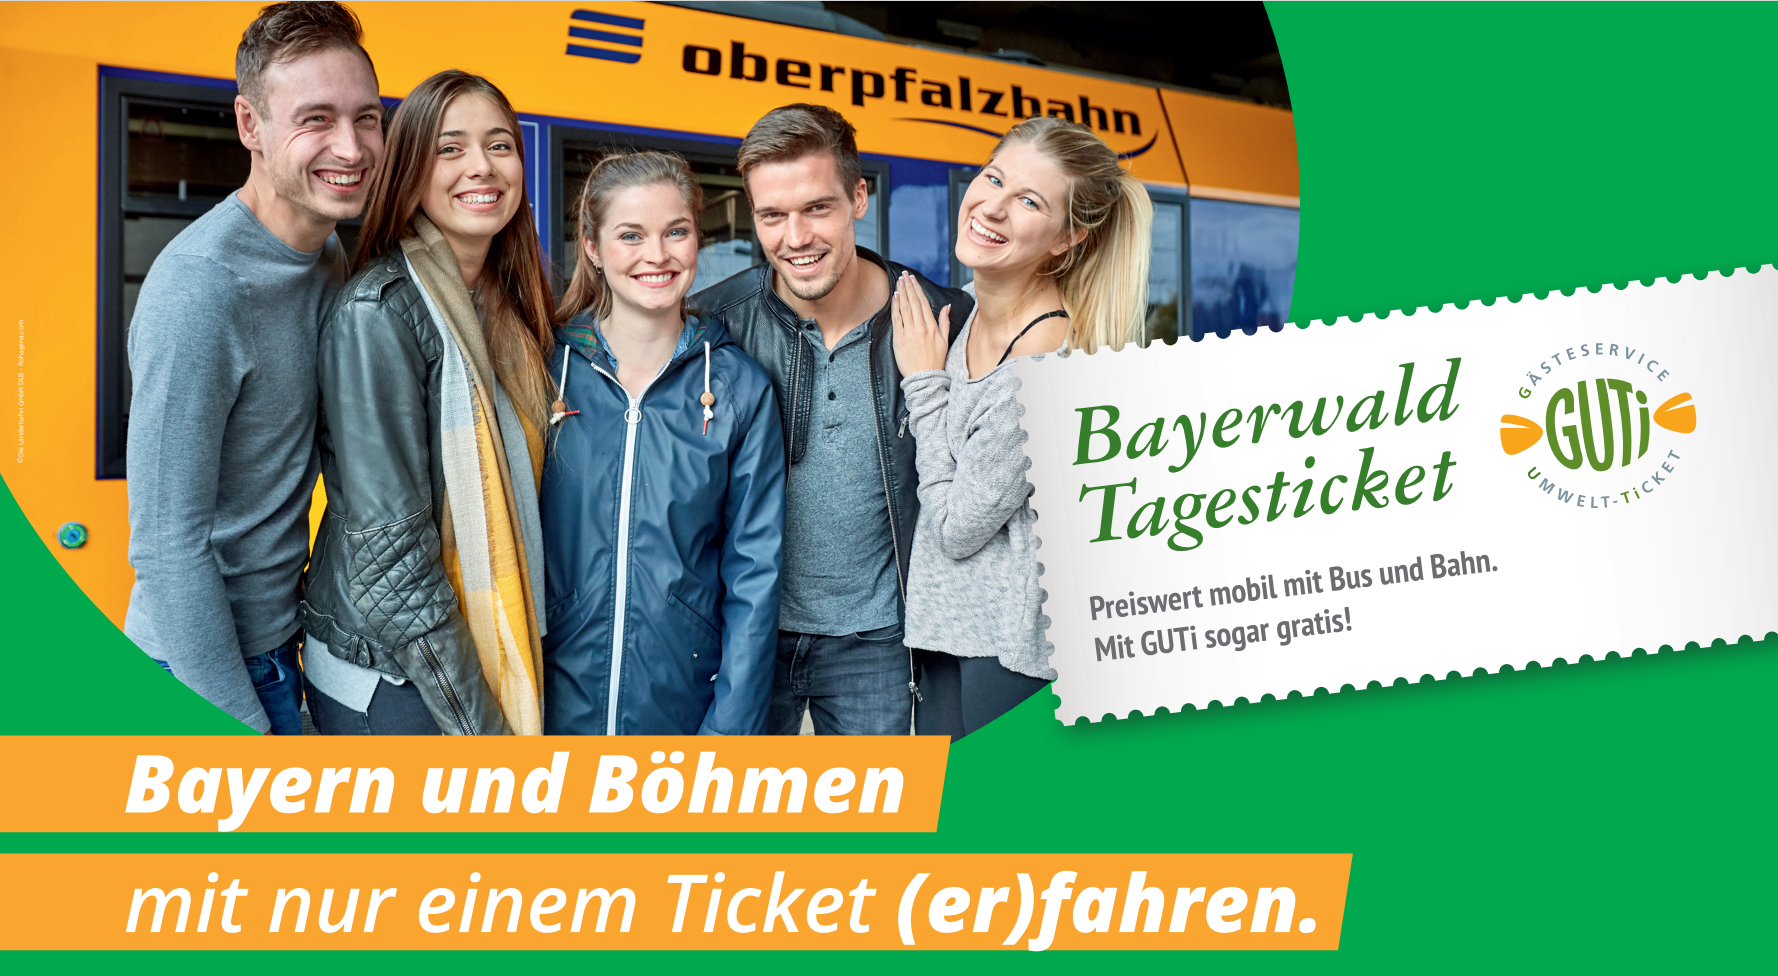 Gruppe junger Personen mit dem Bayerwald-Tagesticket